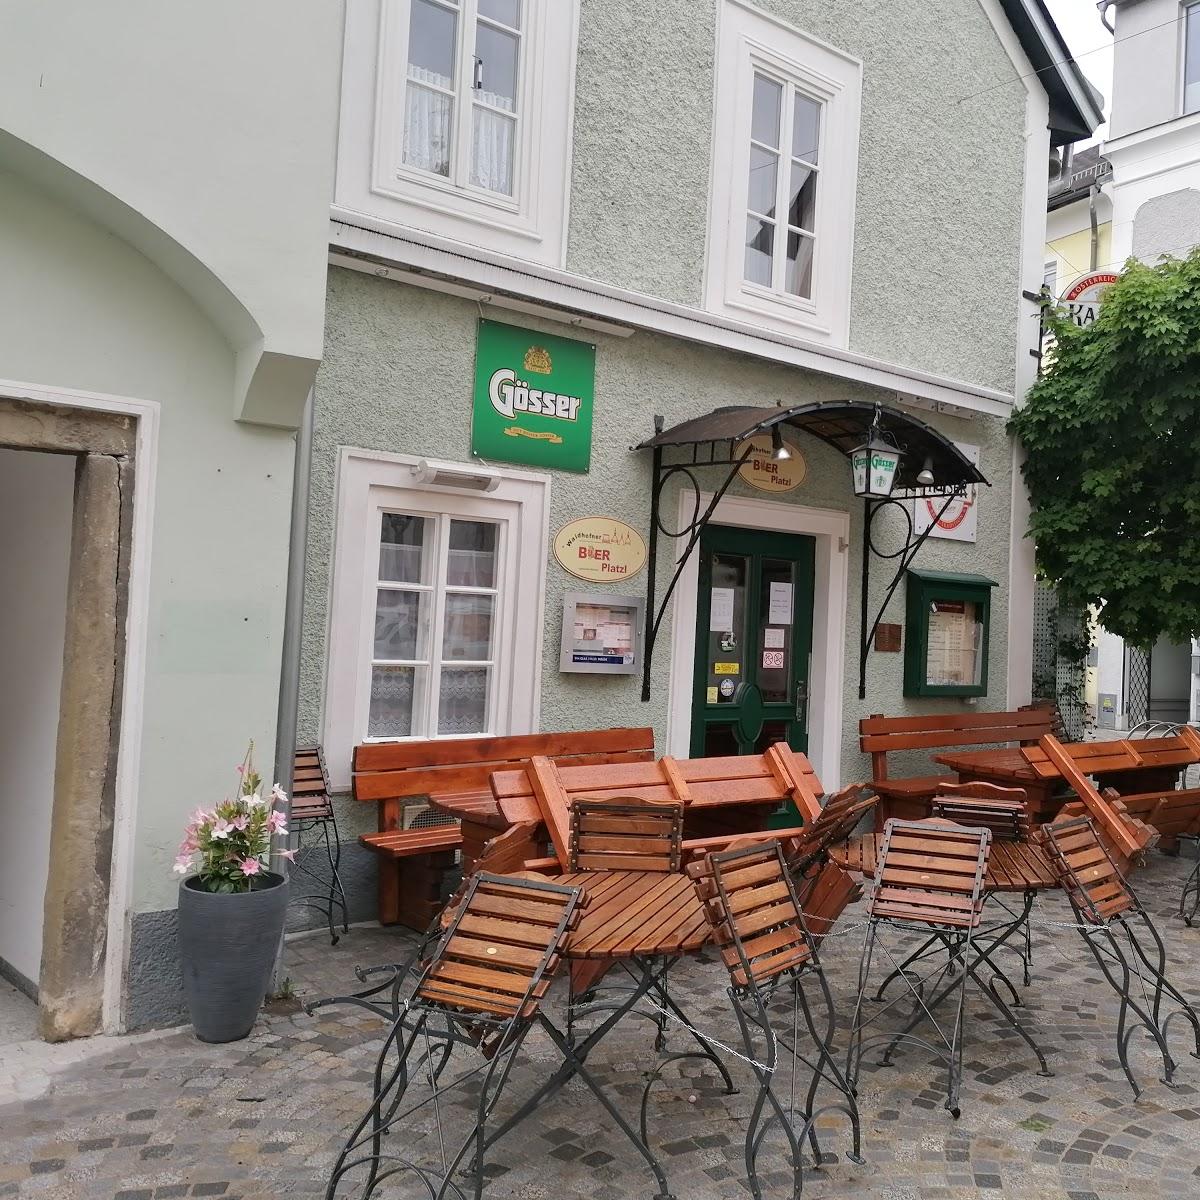 Restaurant "Waidhofner BIER Platzl" in Waidhofen an der Ybbs